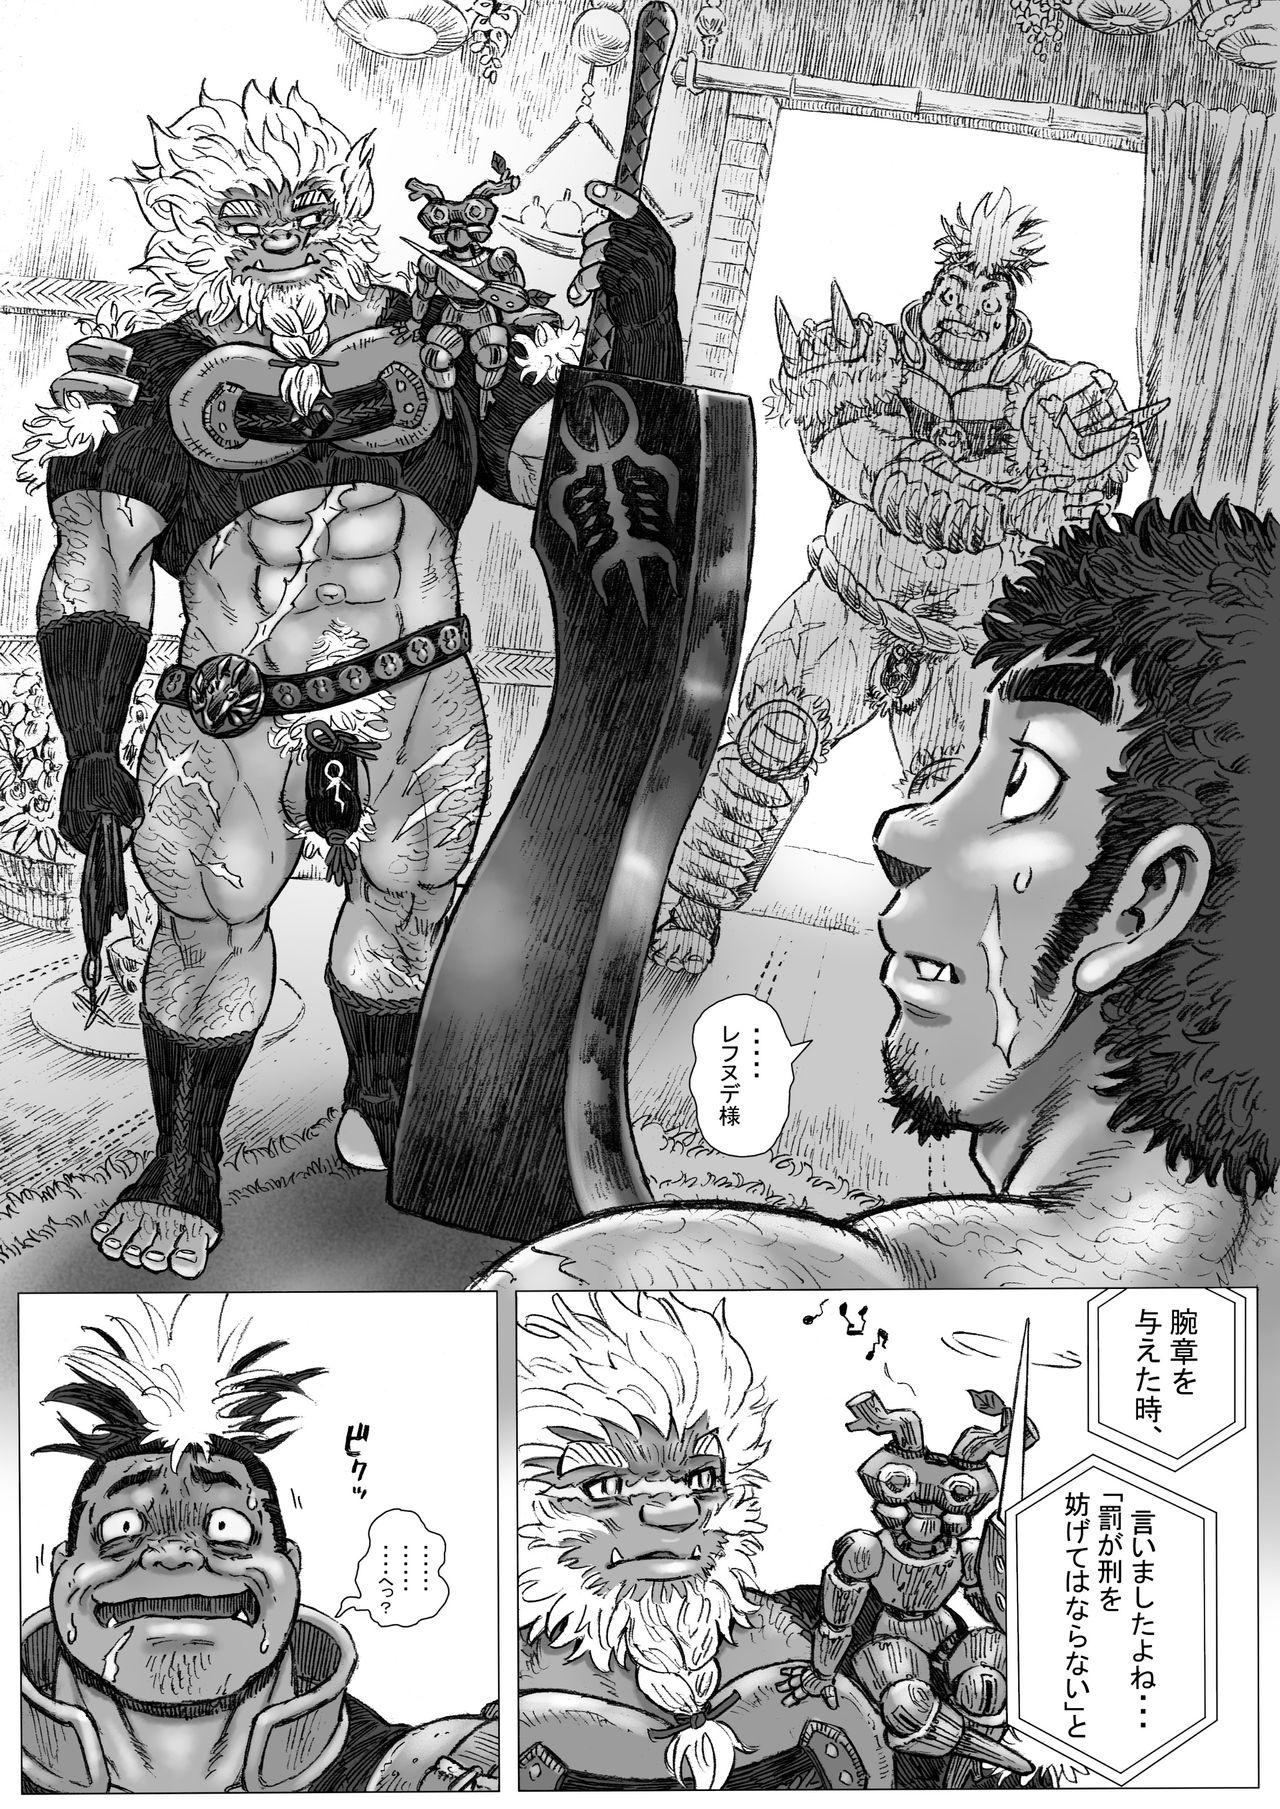 Fetish Hepoe no Kuni kara 16 - konna mitu to mo nee katu ko no maki Doctor - Page 6